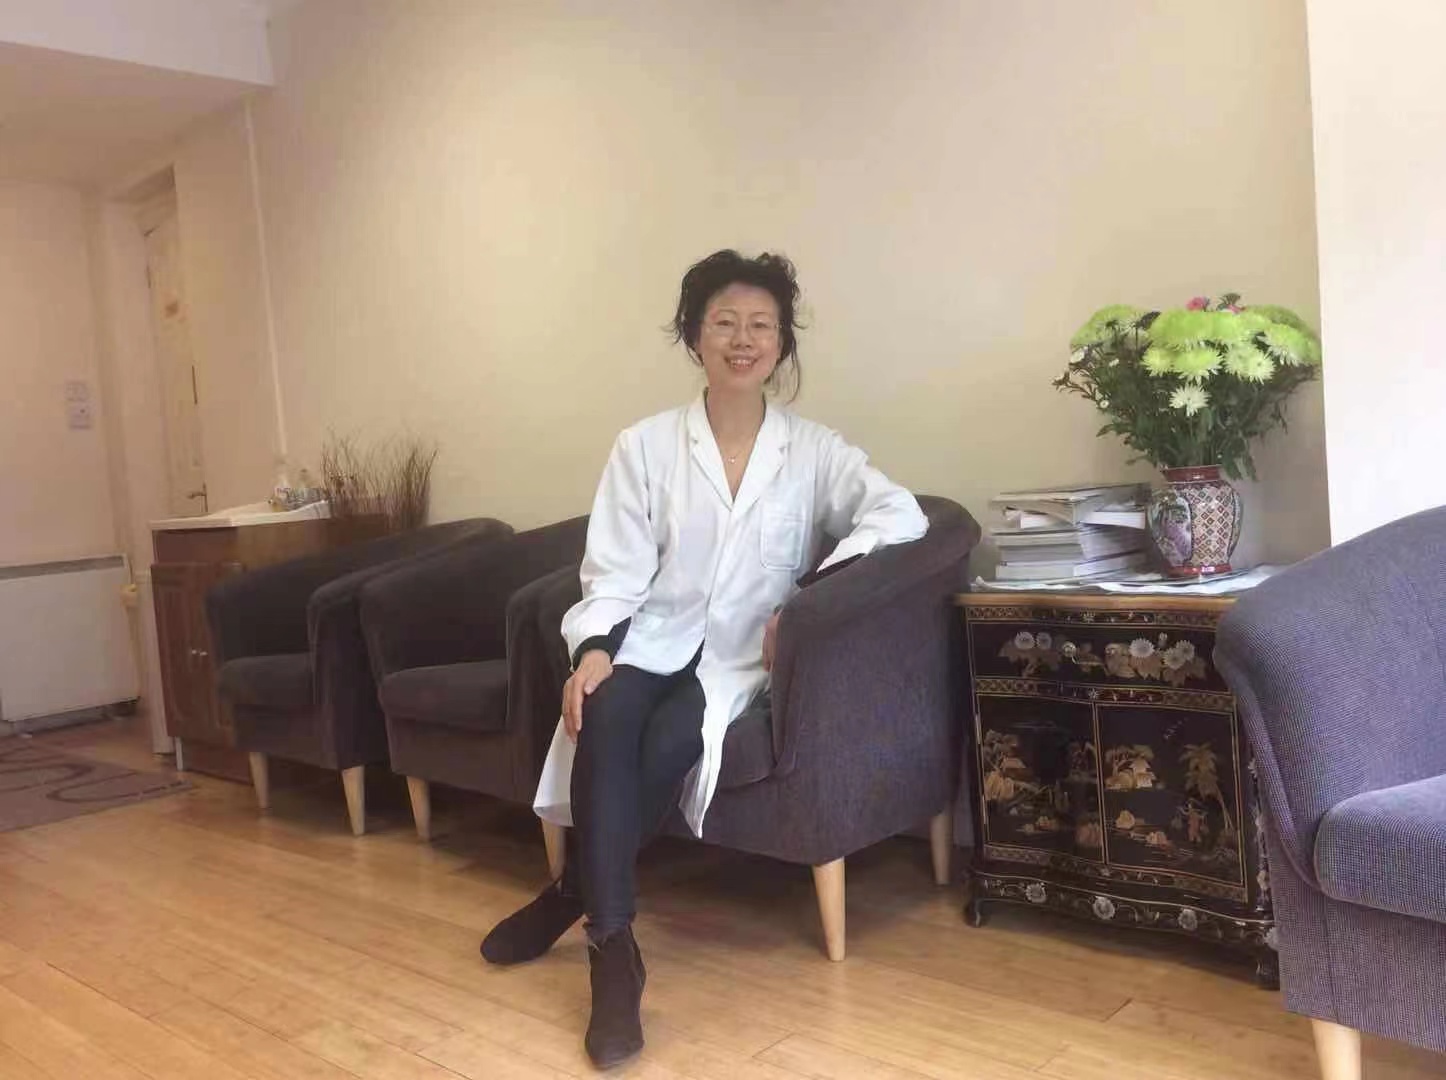 Dr. Jane Li